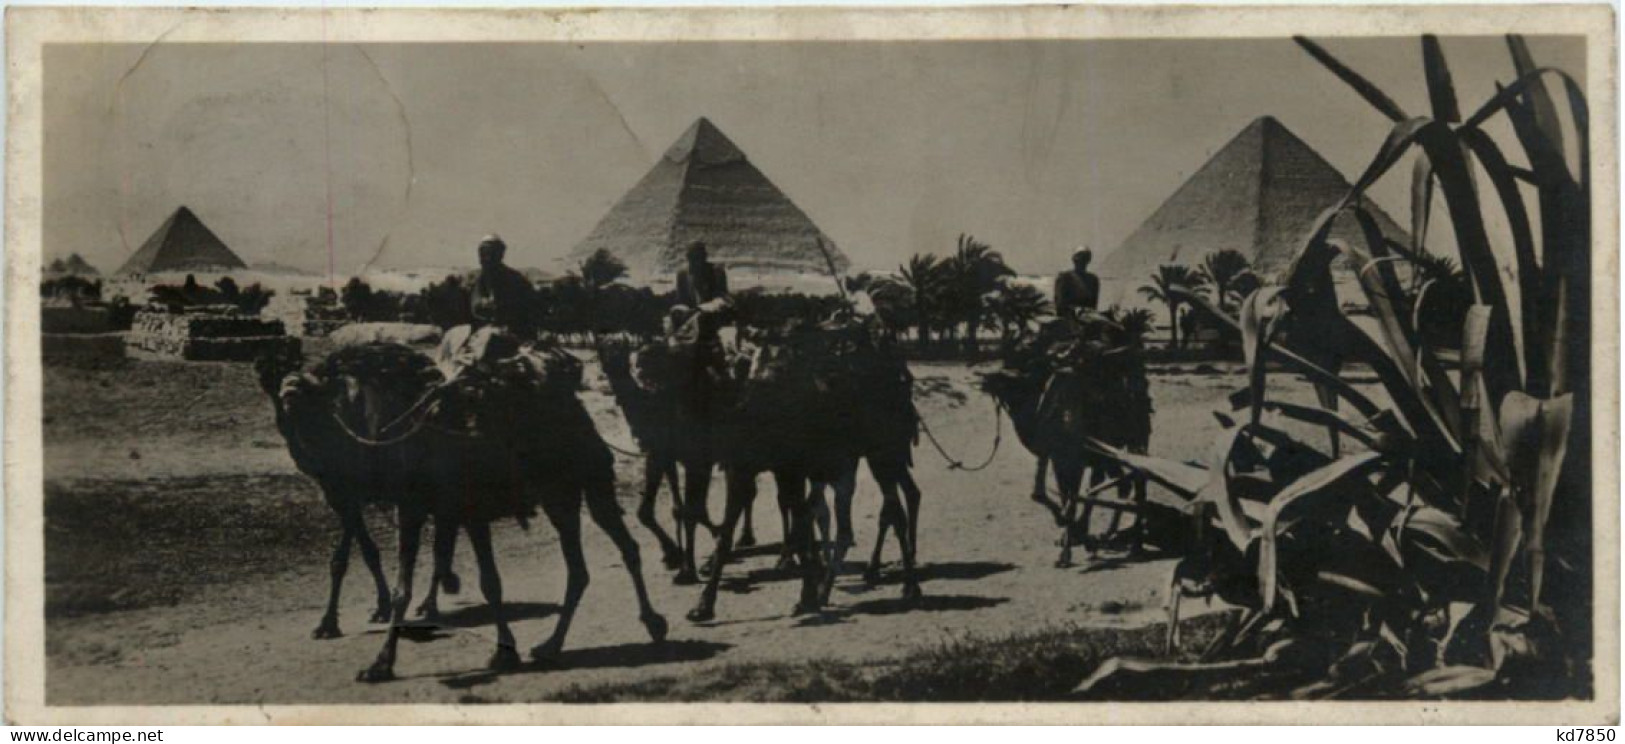 Ägypten - Pyramiden - Pyramiden